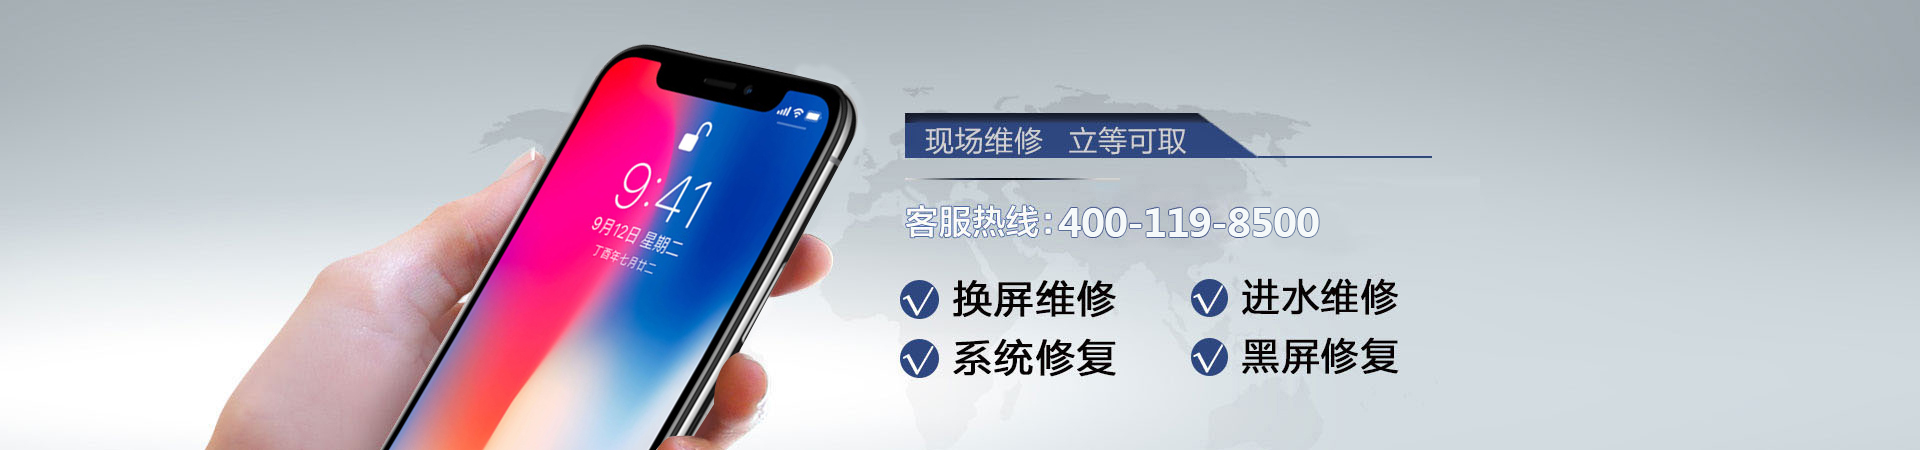 郑州苹果手机维修服务地址查询